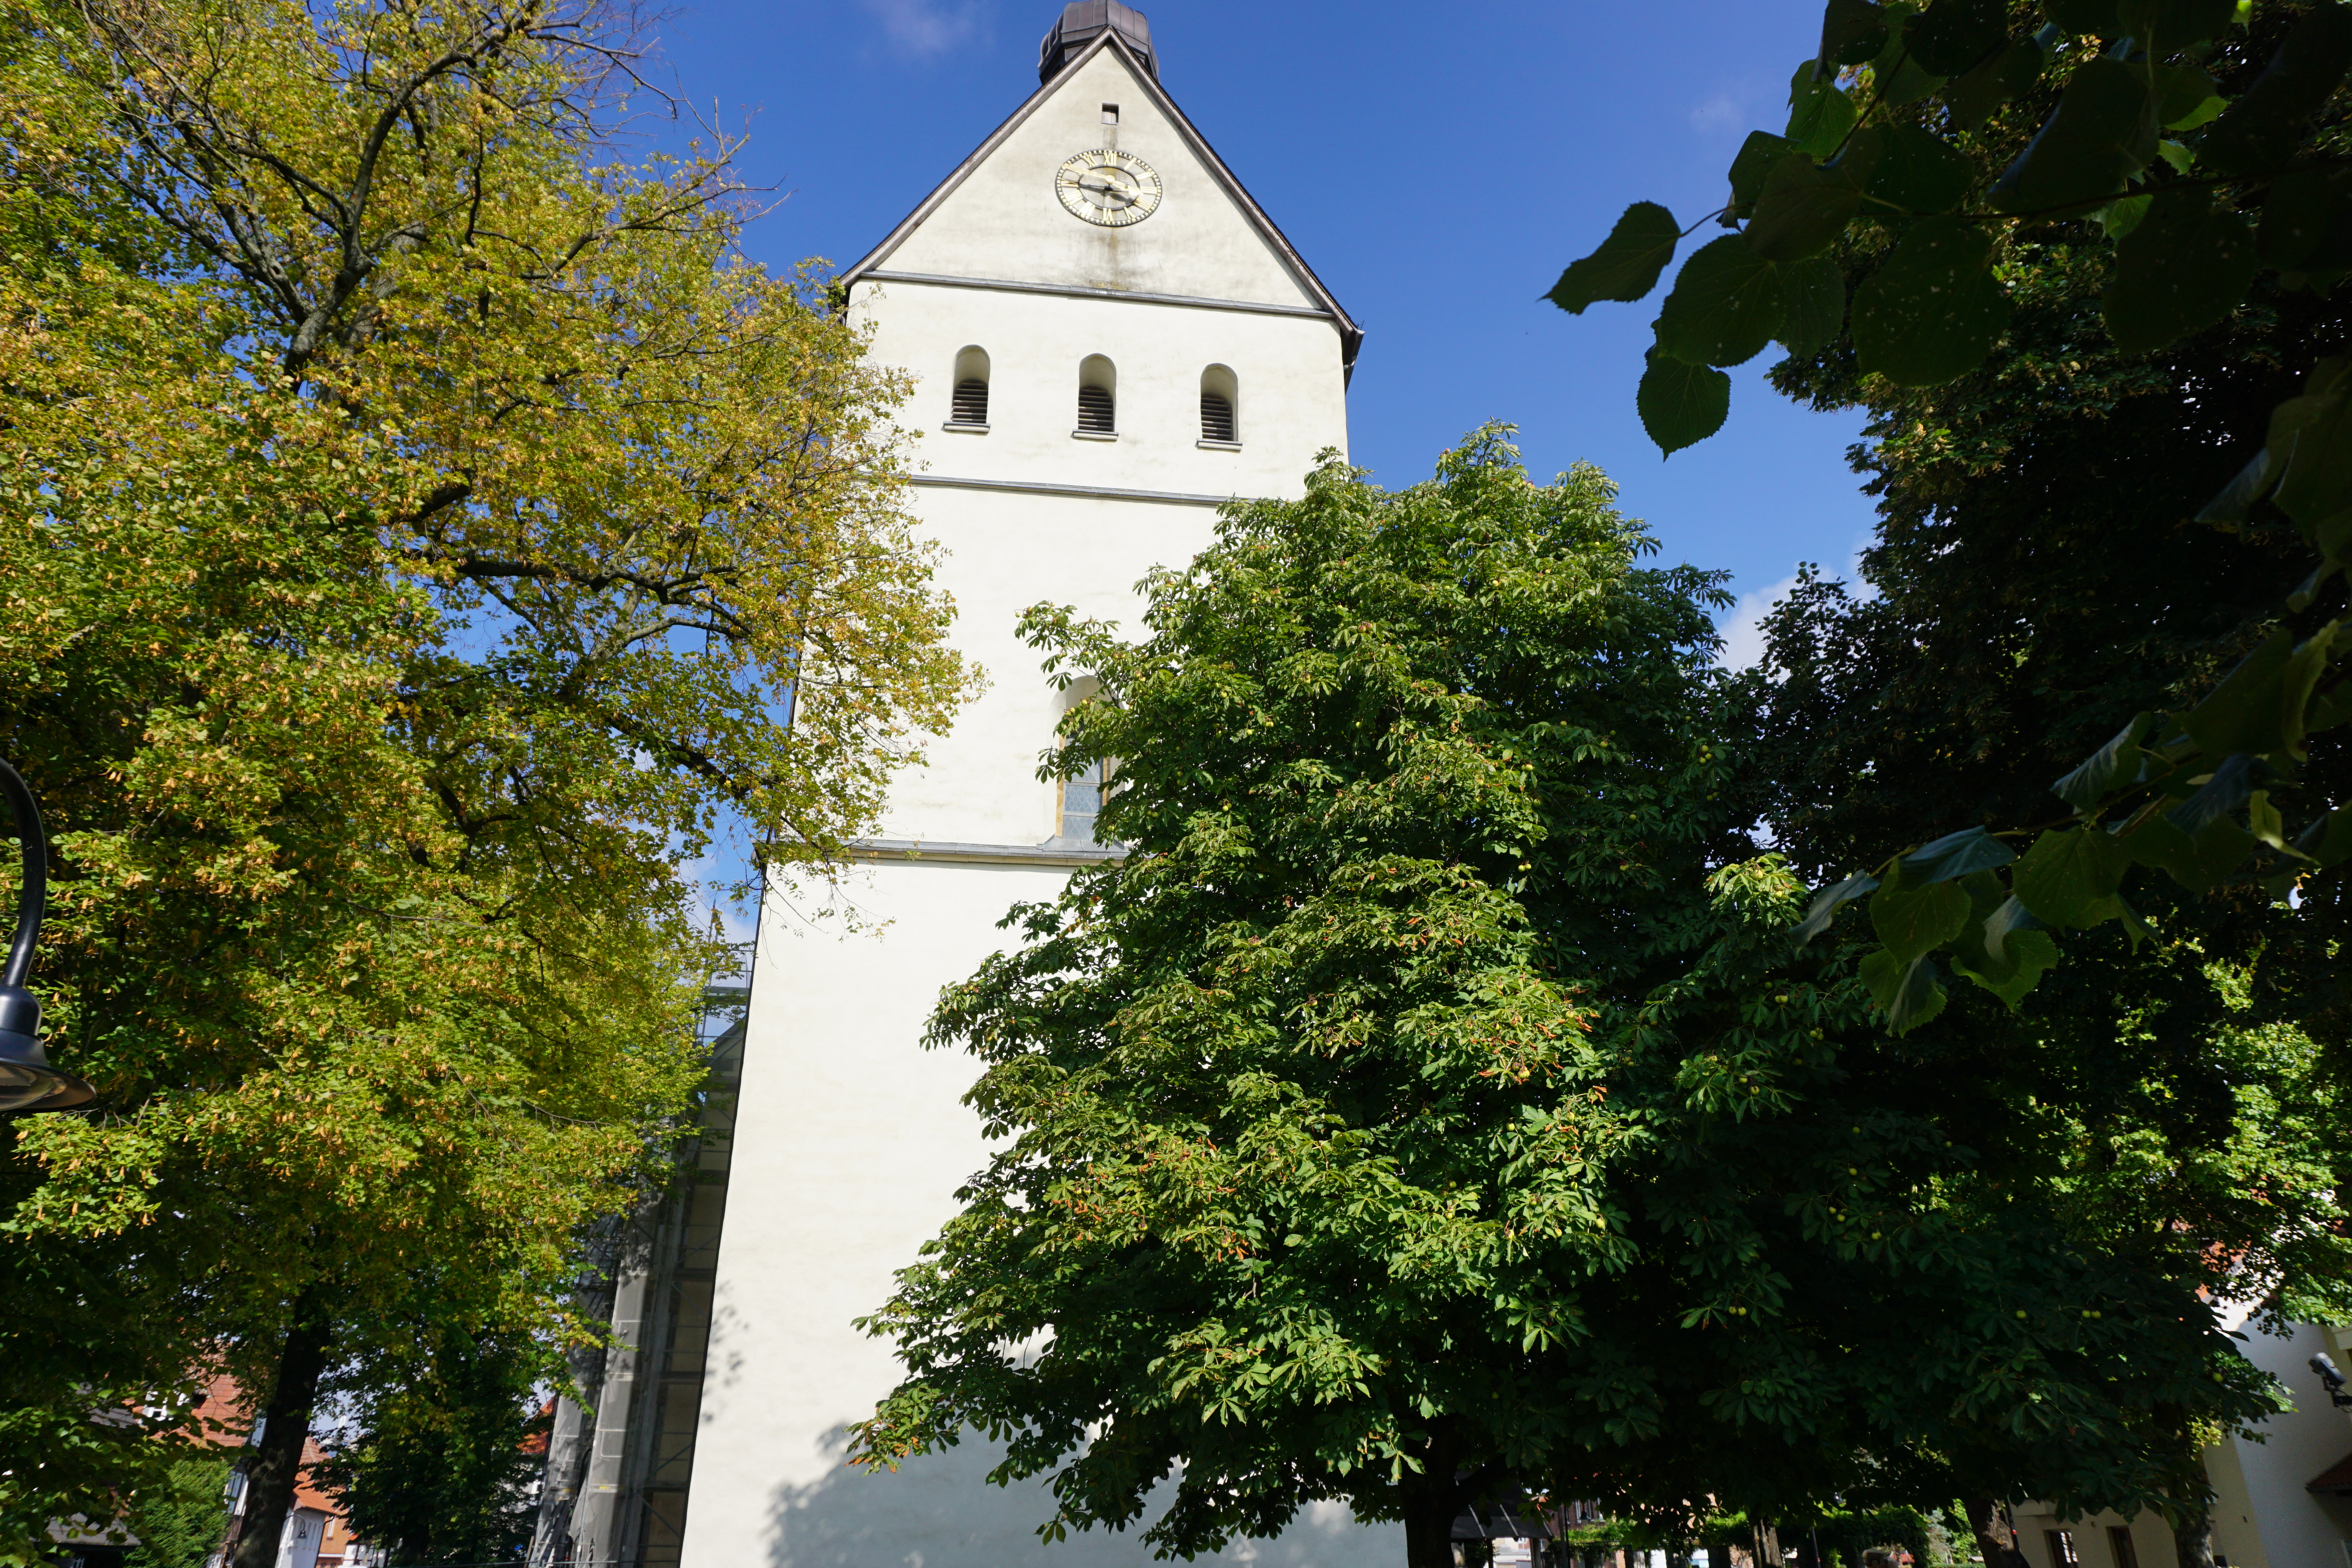 Kirchturm der Kirche St. Johannes Enthauptung, Salzkotten.
